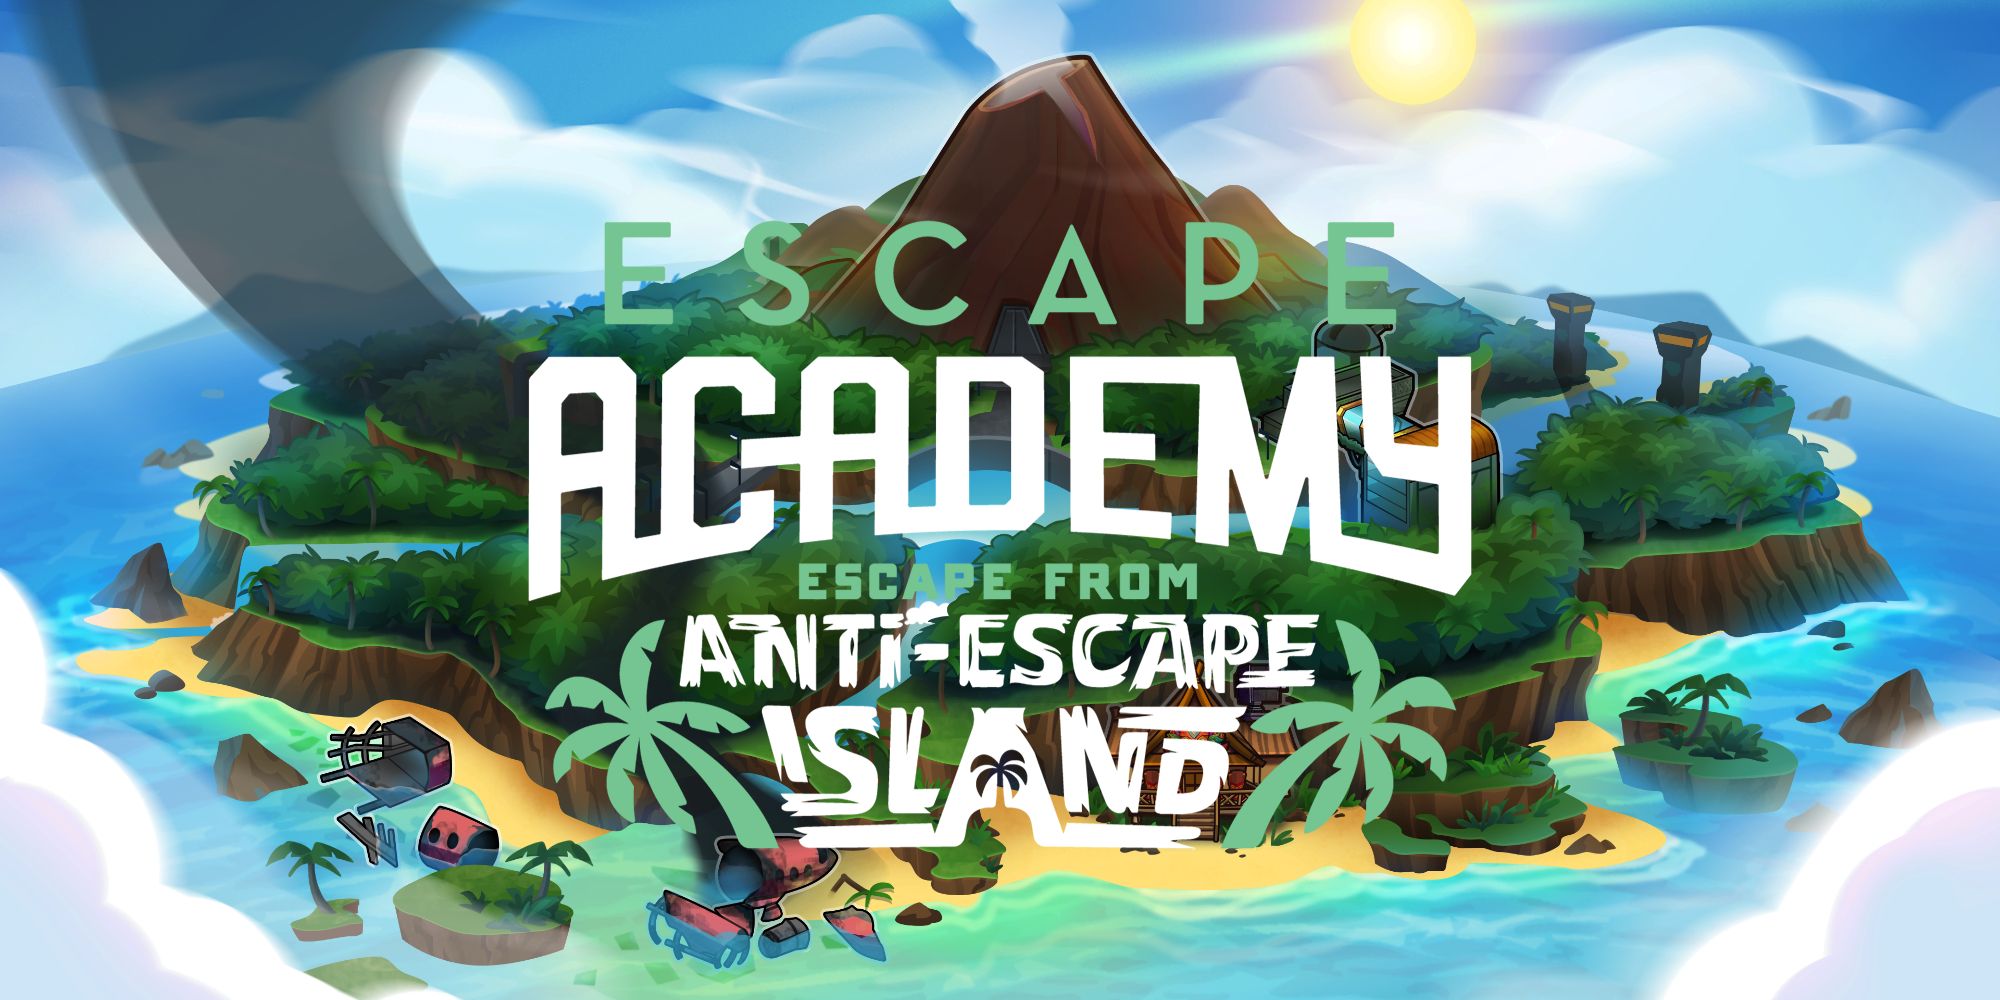 Escape Academy- Escape From Anti-Escape Island DLC Review anti-escape island art with title